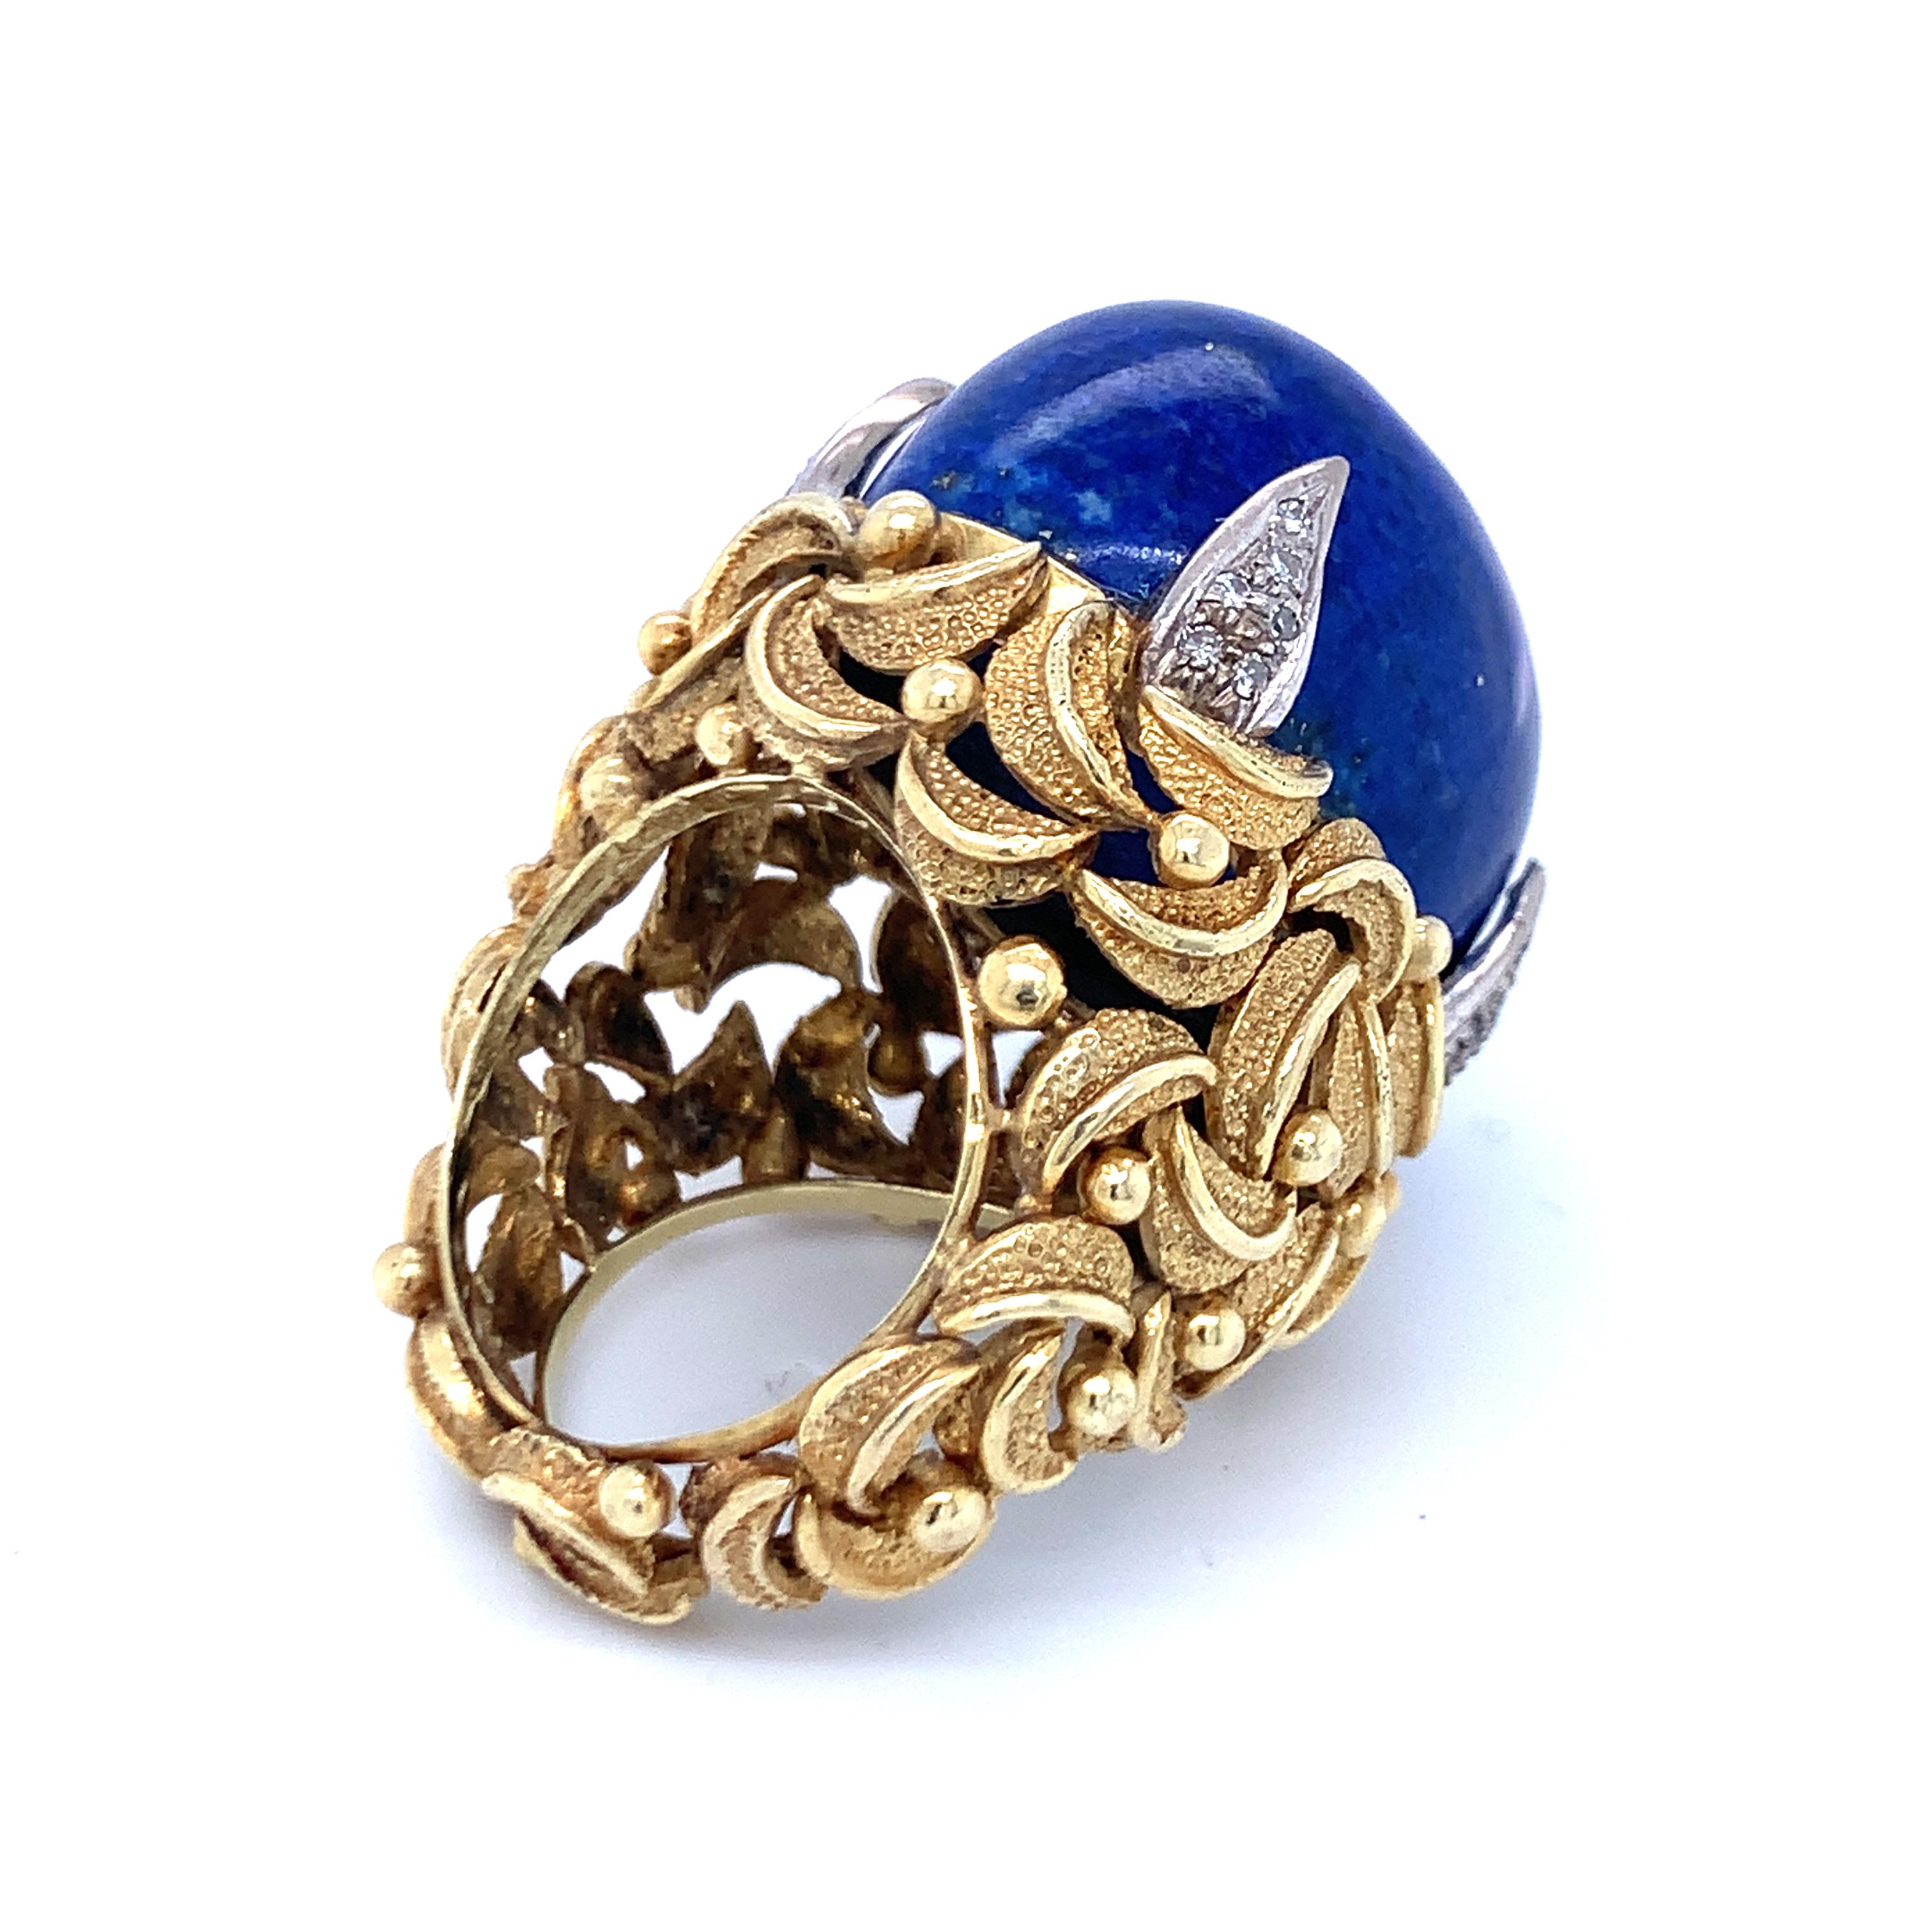 Cabochon Lapis Lazuli and Diamond 18K Yellow Gold Ring